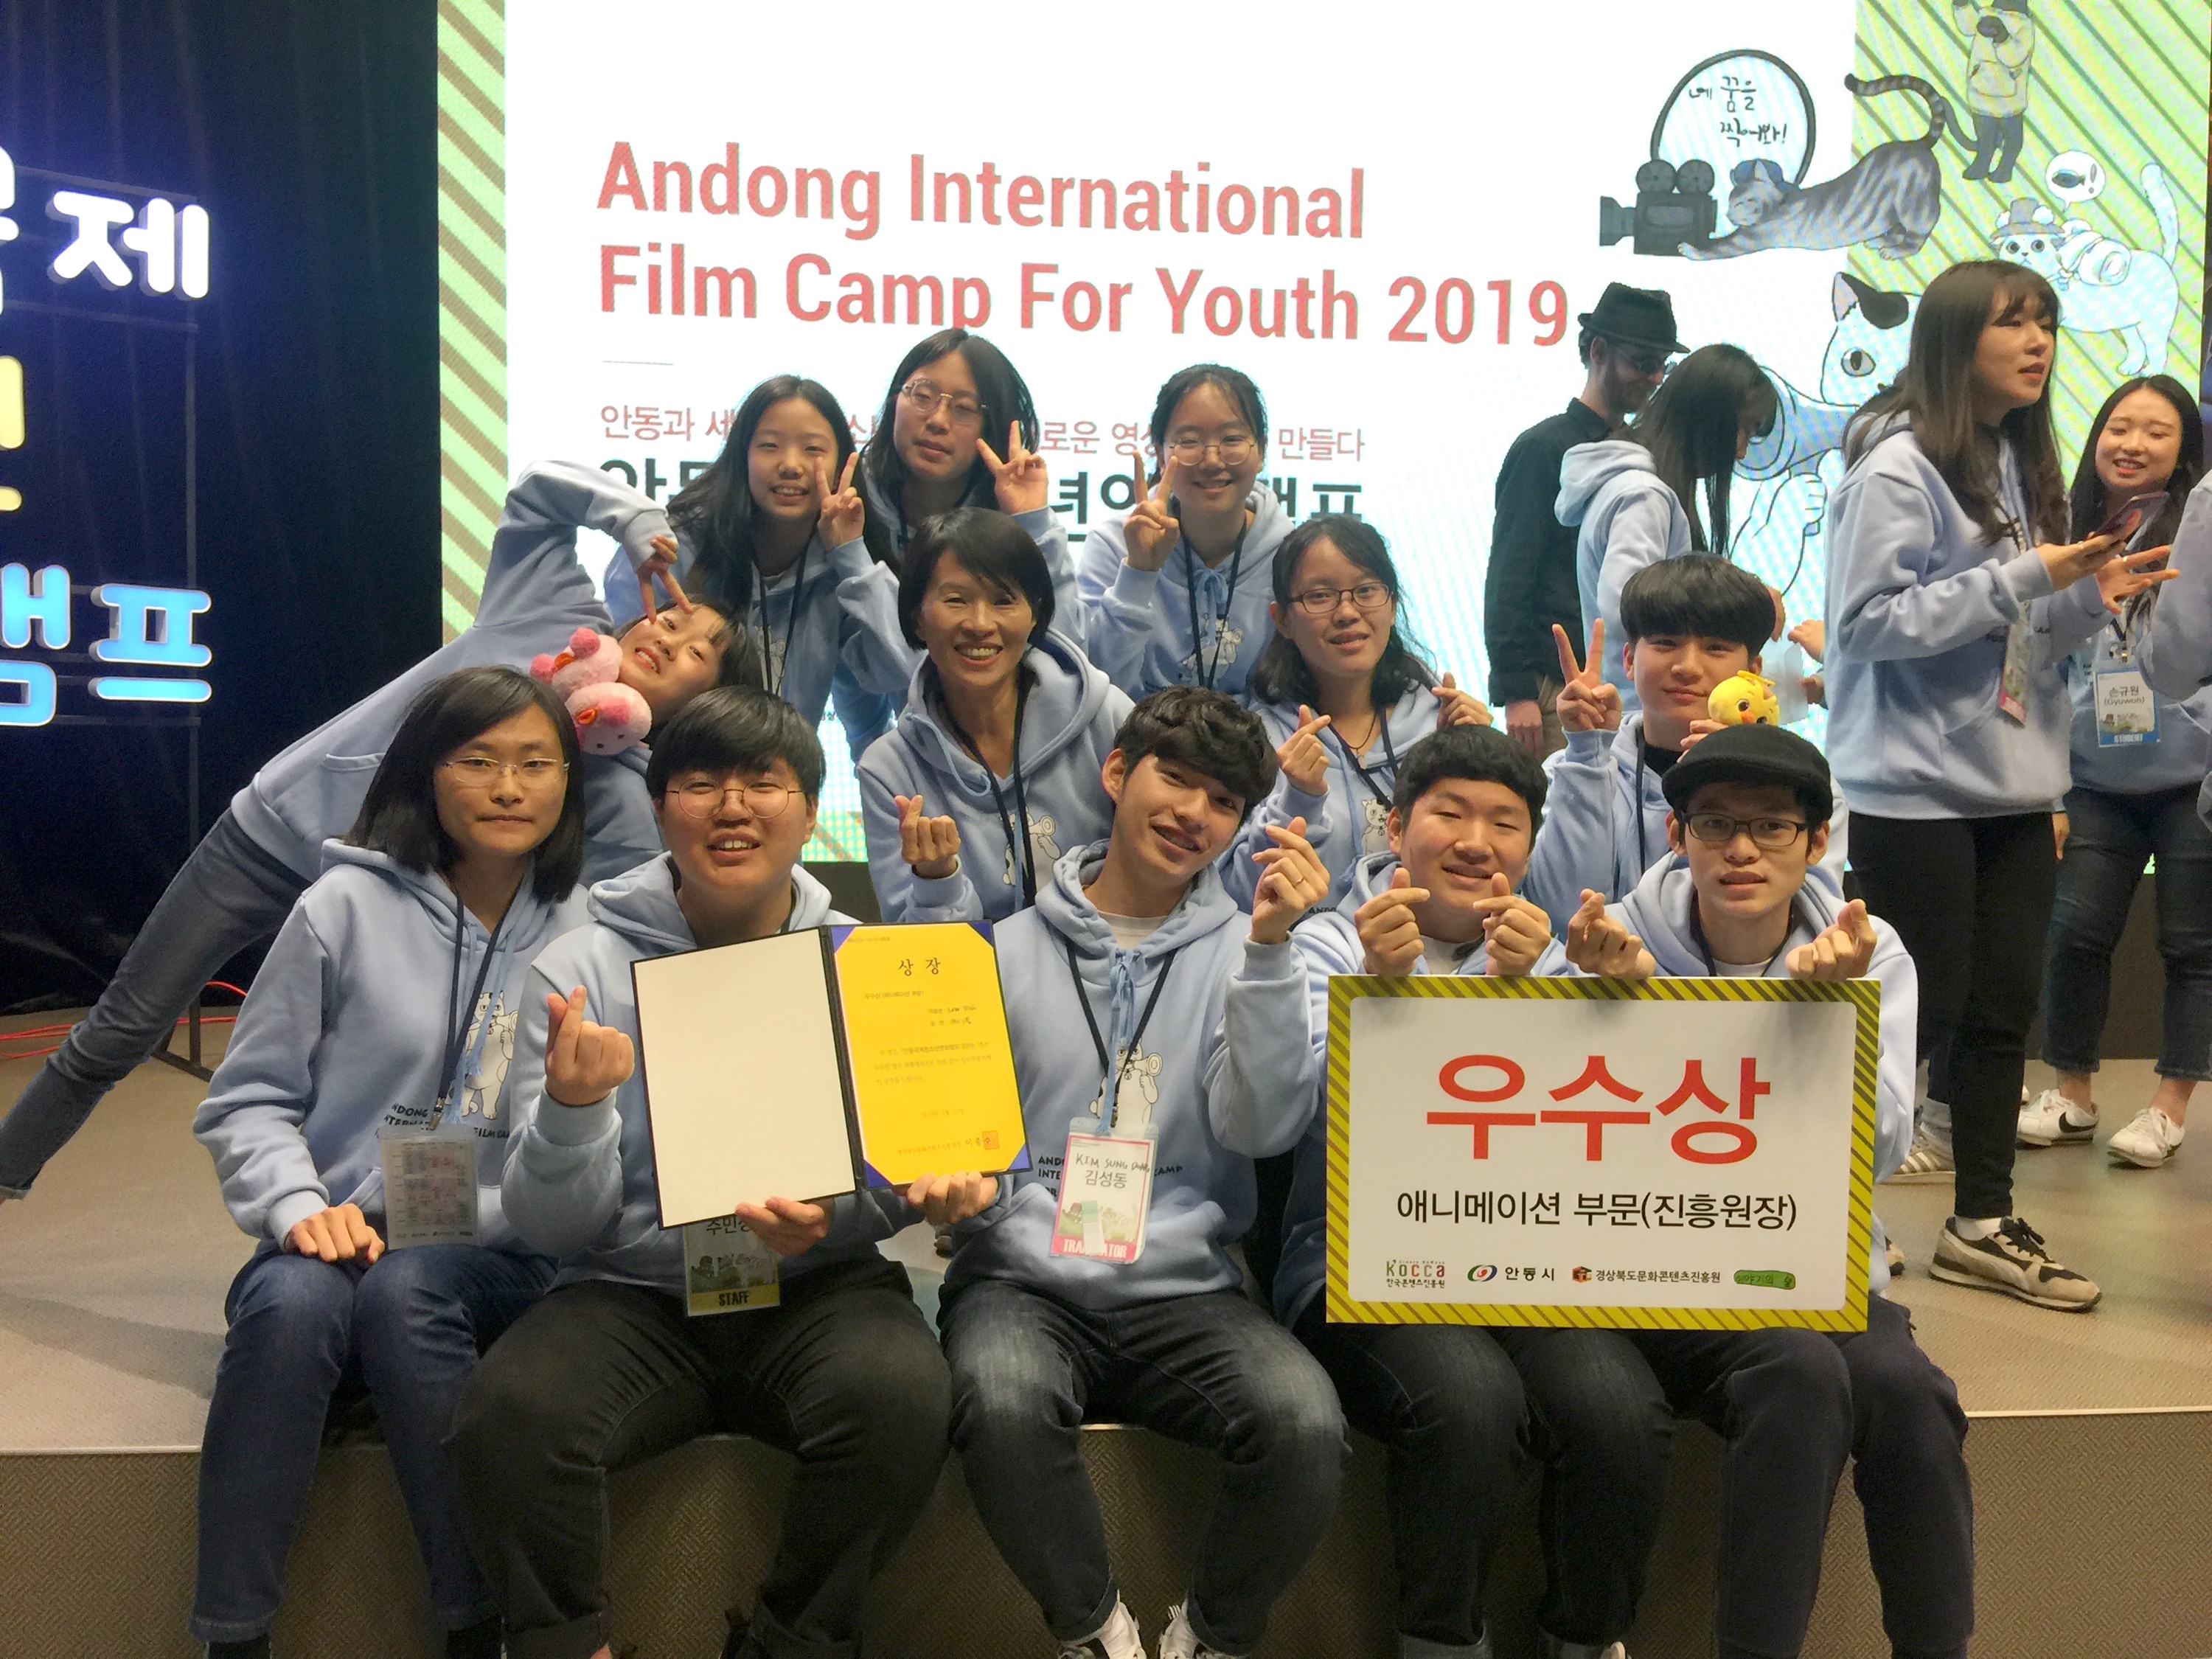 崑大視傳系《Love Fish》獲青睞 韓國青年電影營奪動畫首獎-安東國際青年電影營